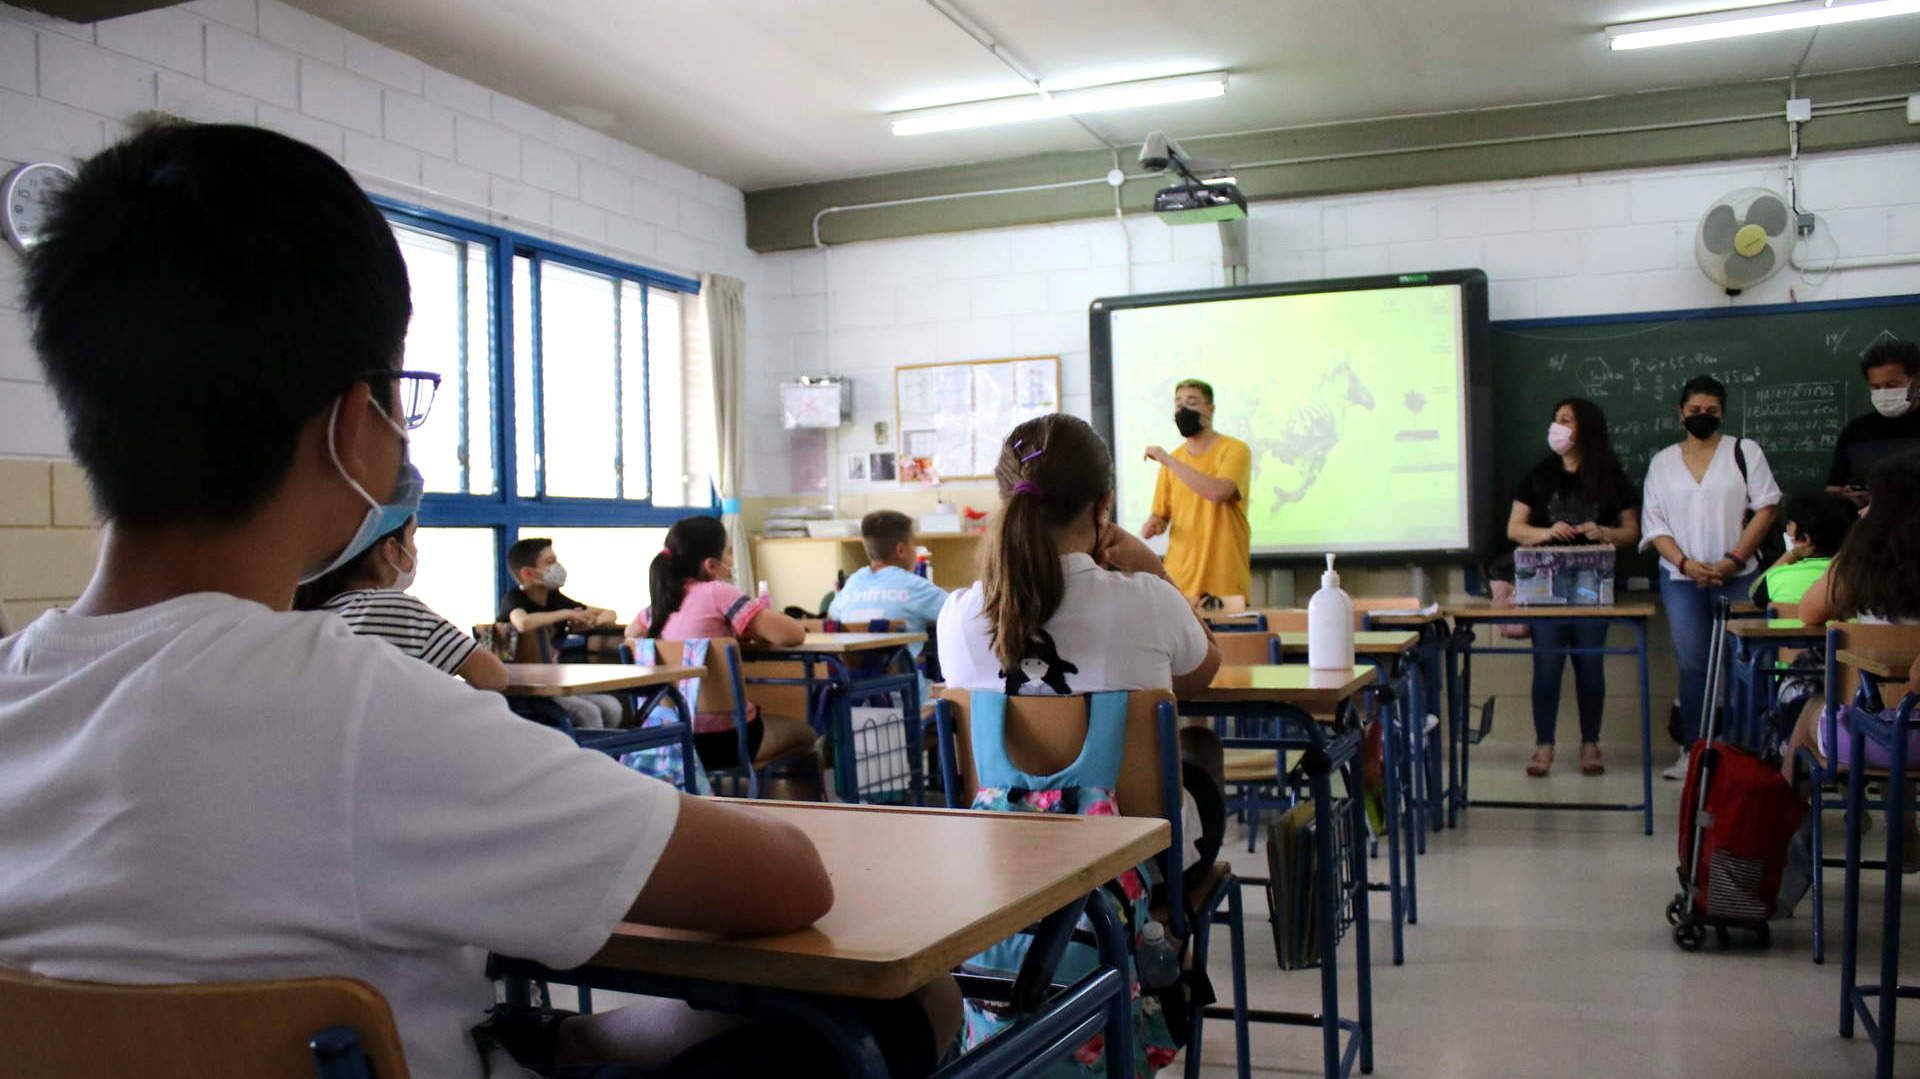  Charla sobre acoso escolar en una clase del CEIP Antonio Machado 